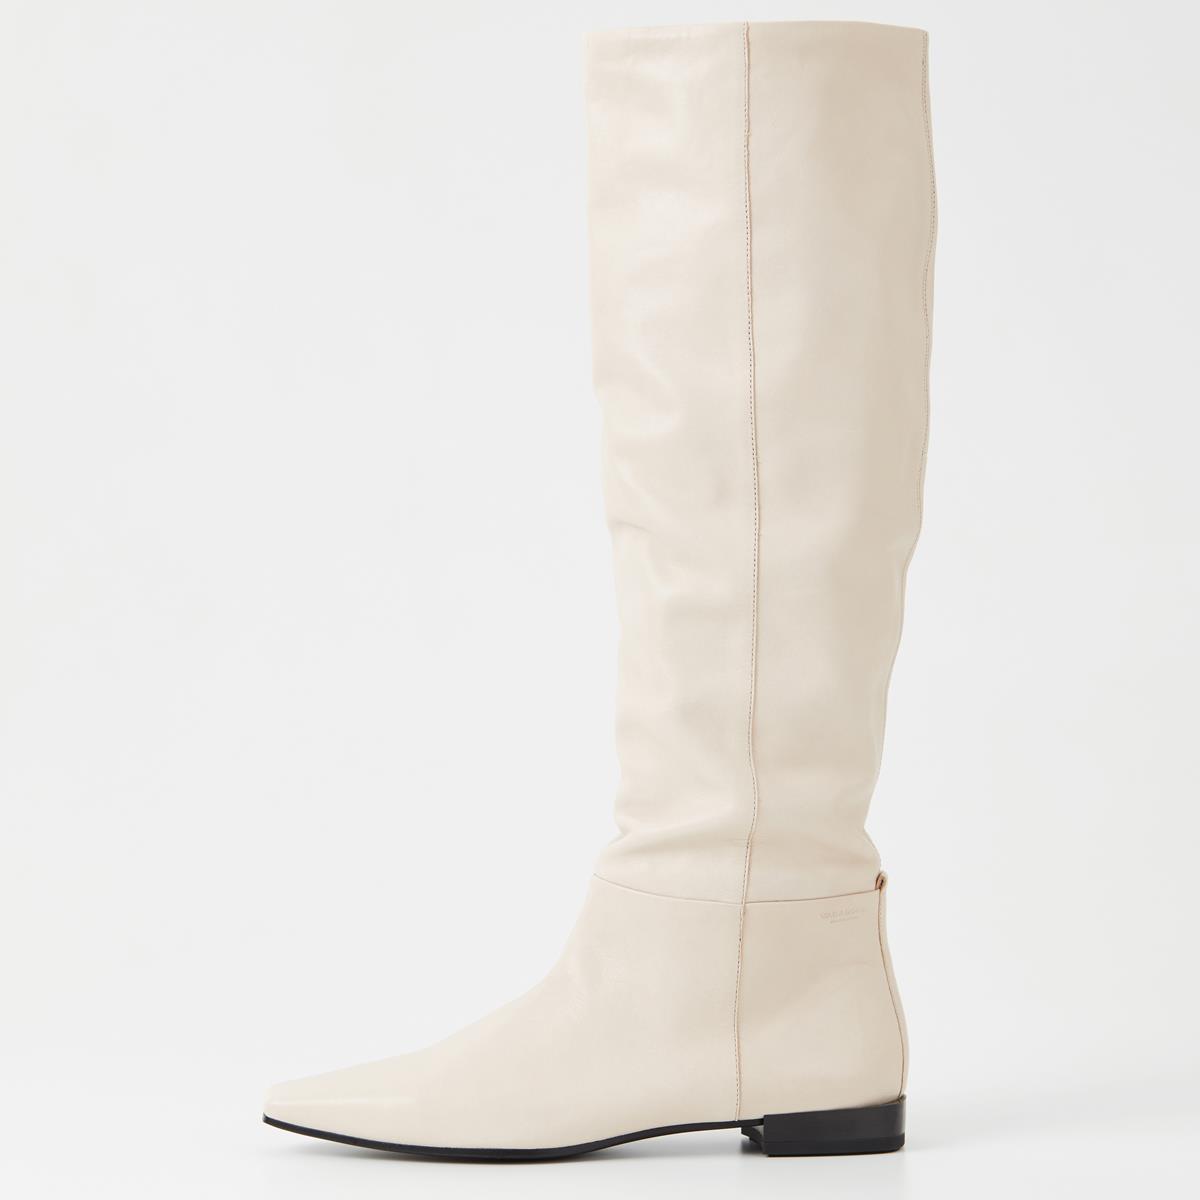 Verzadigen Modernisering beheerder Lene - Off white Tall boots Woman | Vagabond